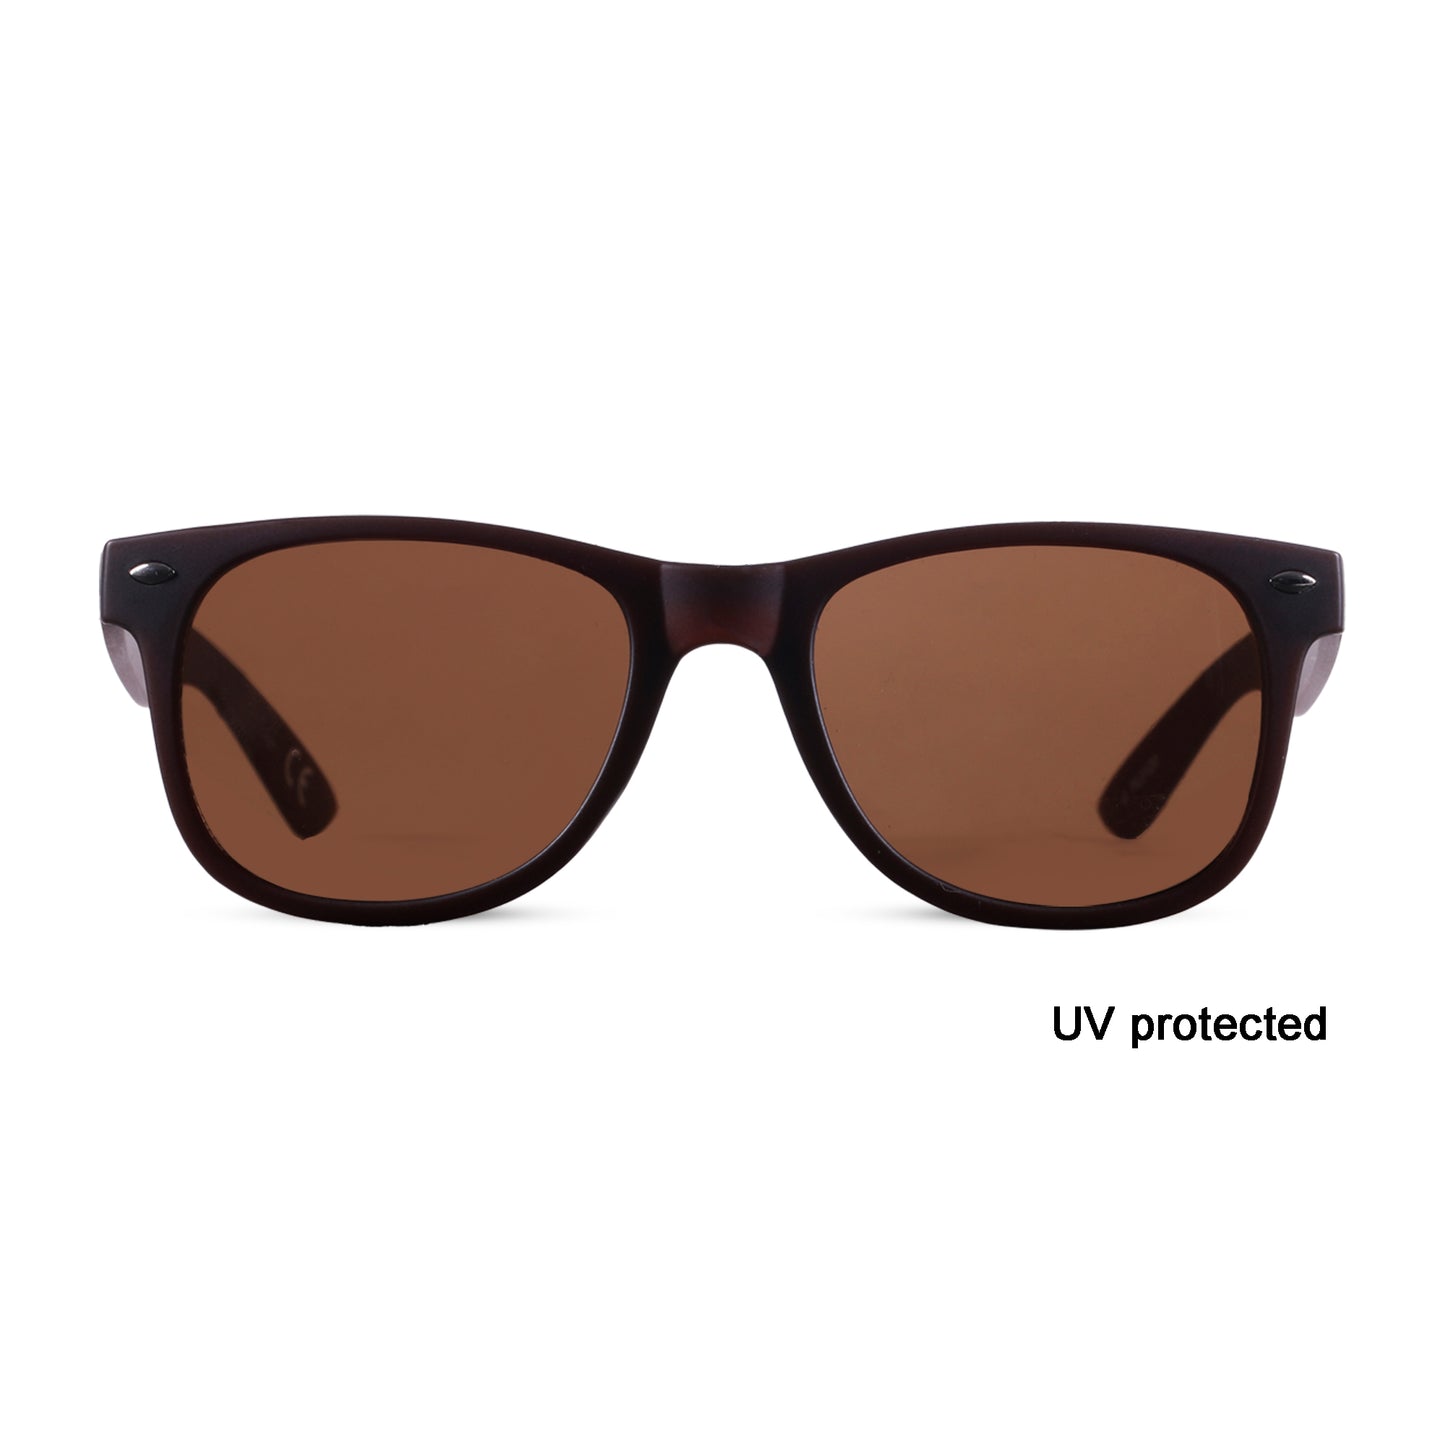 2.5 NVG UV Protected Brown Wayfarer Sunglasses